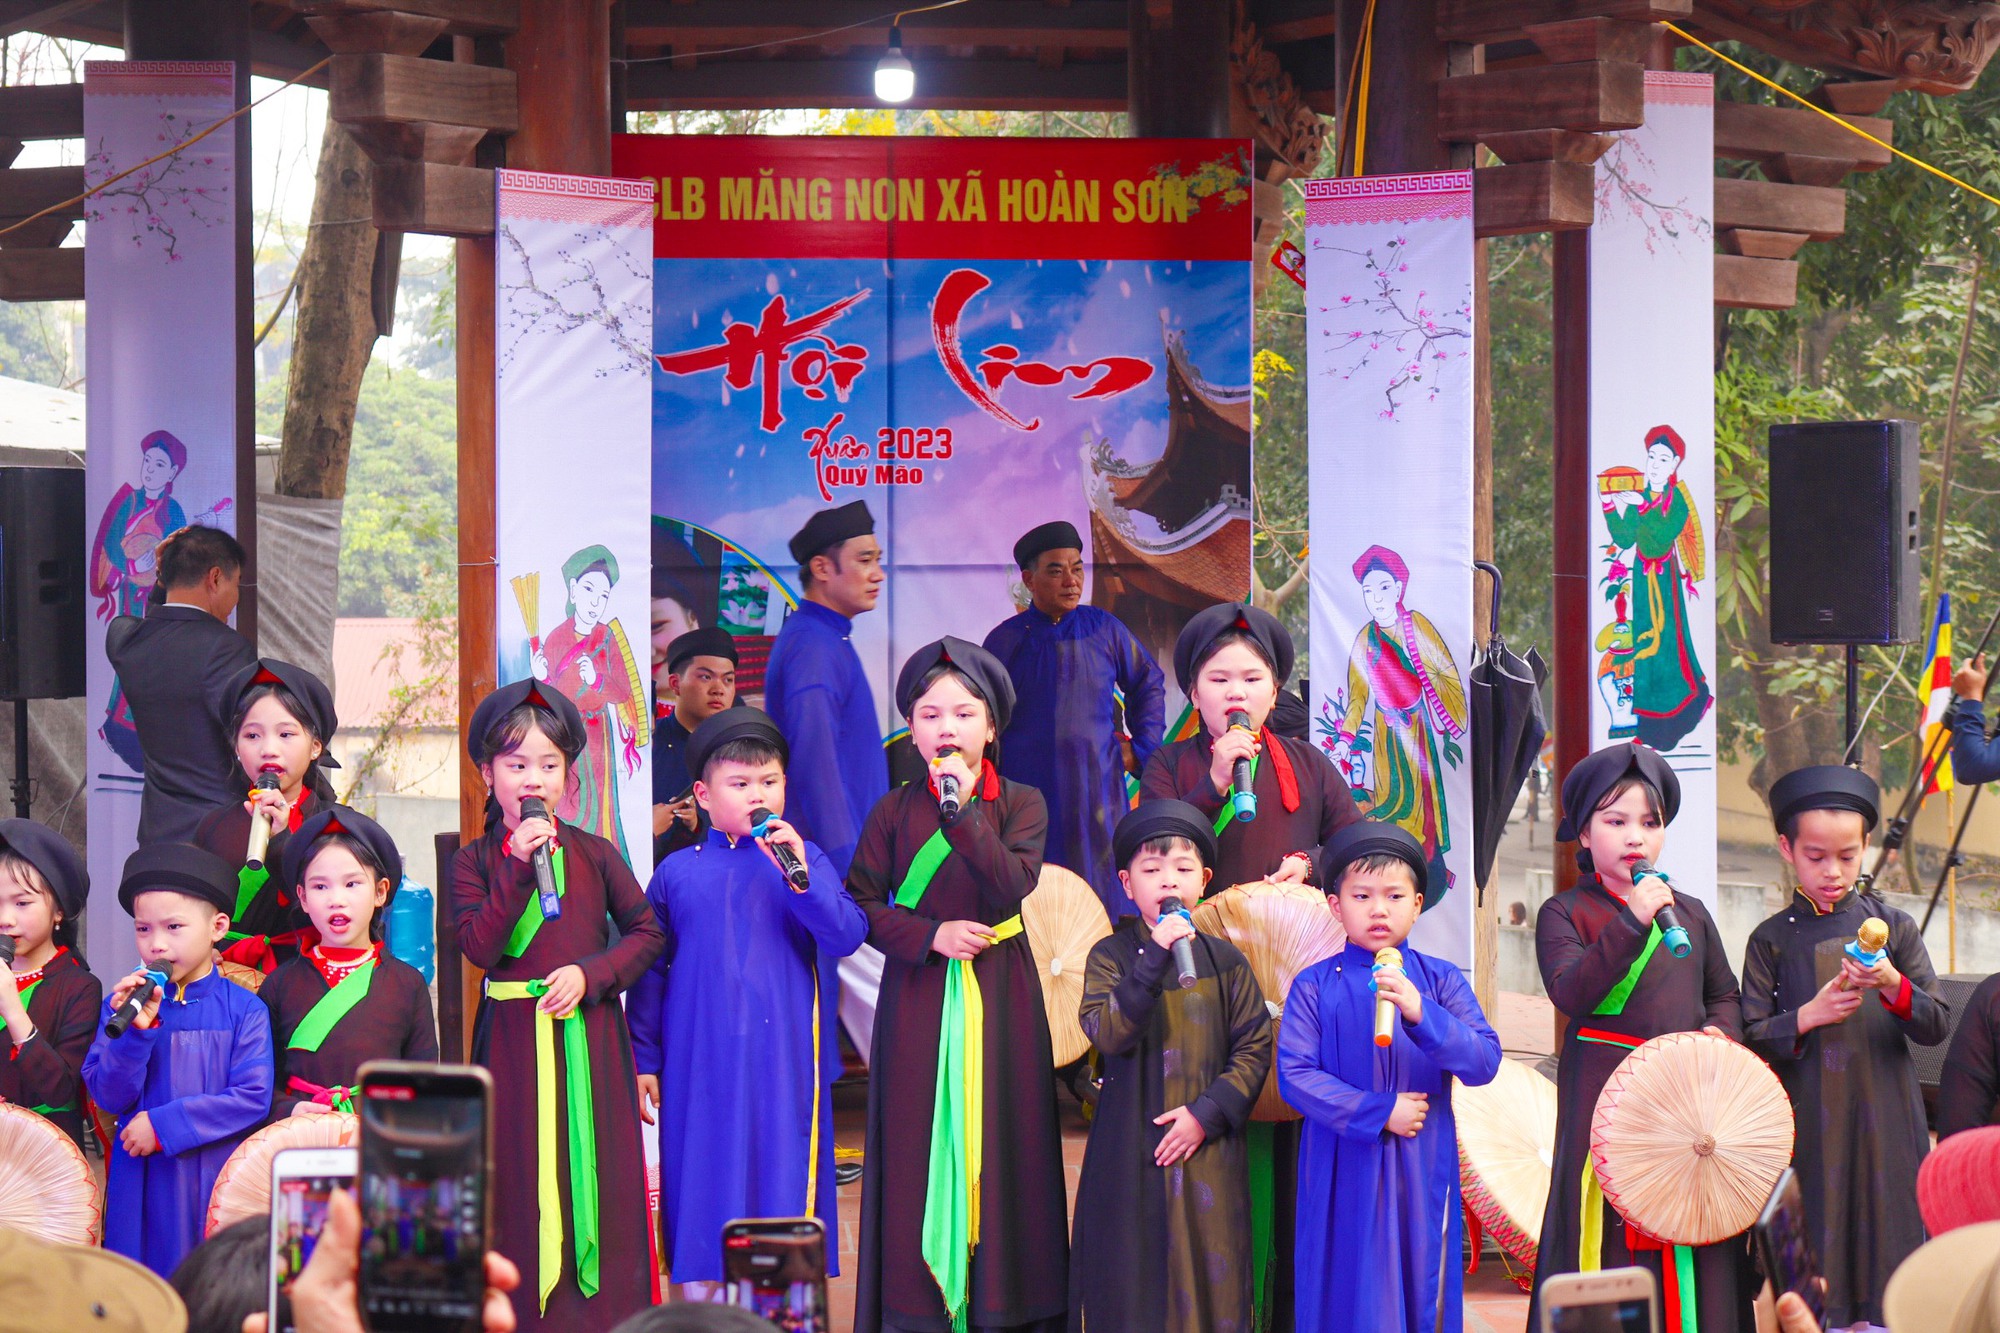 Lễ hội nổi tiếng ở tỉnh nhỏ nhất Việt Nam, hút hàng vạn khách trong 2 ngày, cách Hà Nội chưa tới 50km- Ảnh 4.